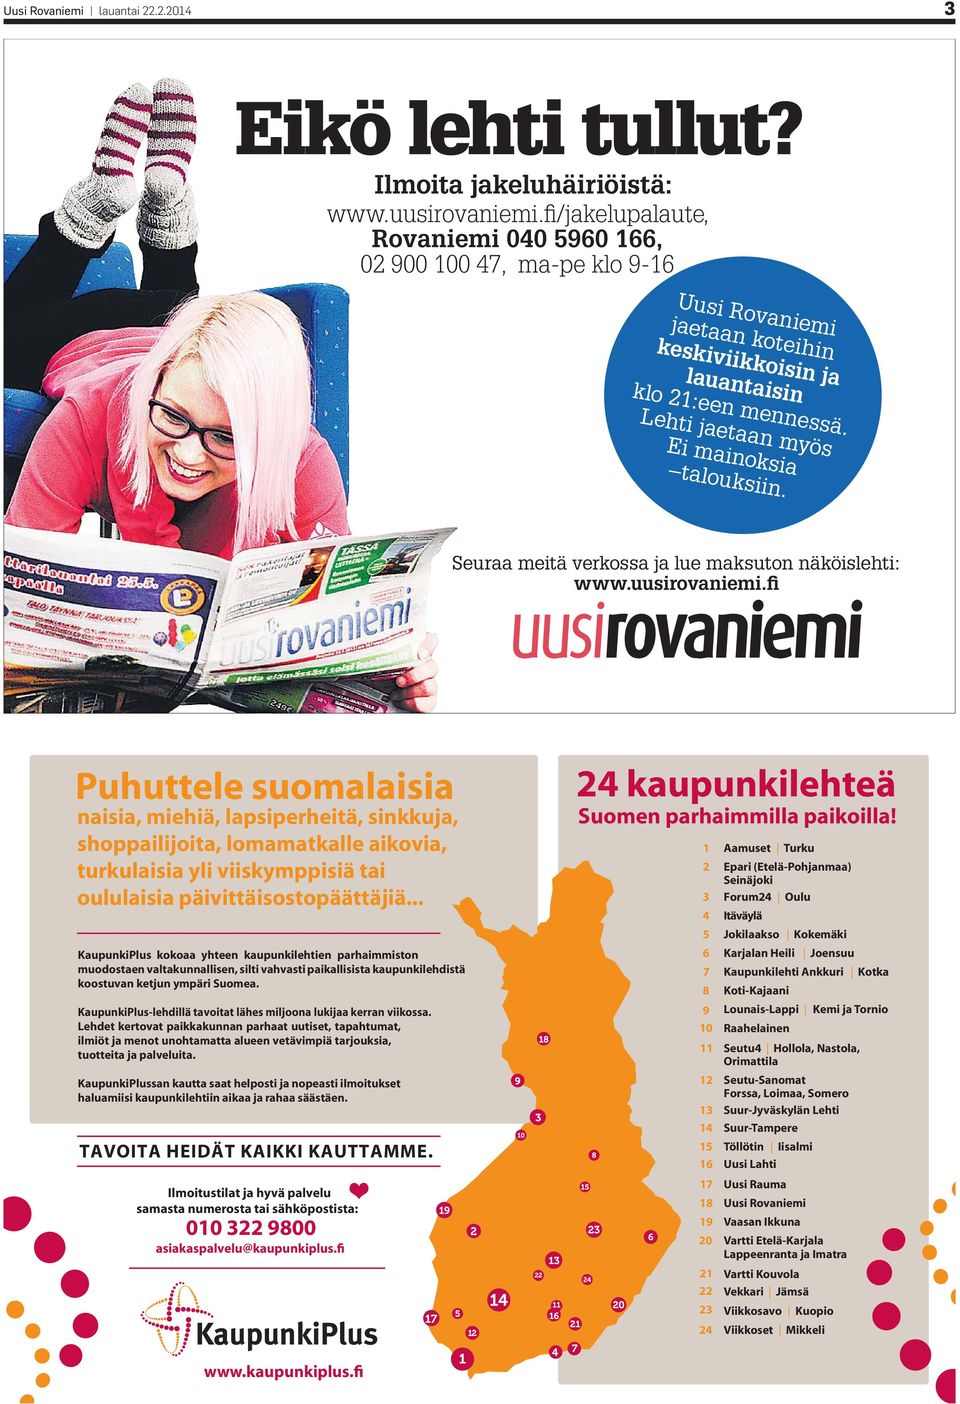 Seuraa meitä verkossa ja lue maksuton näköislehti: www.uusirovaniemi.